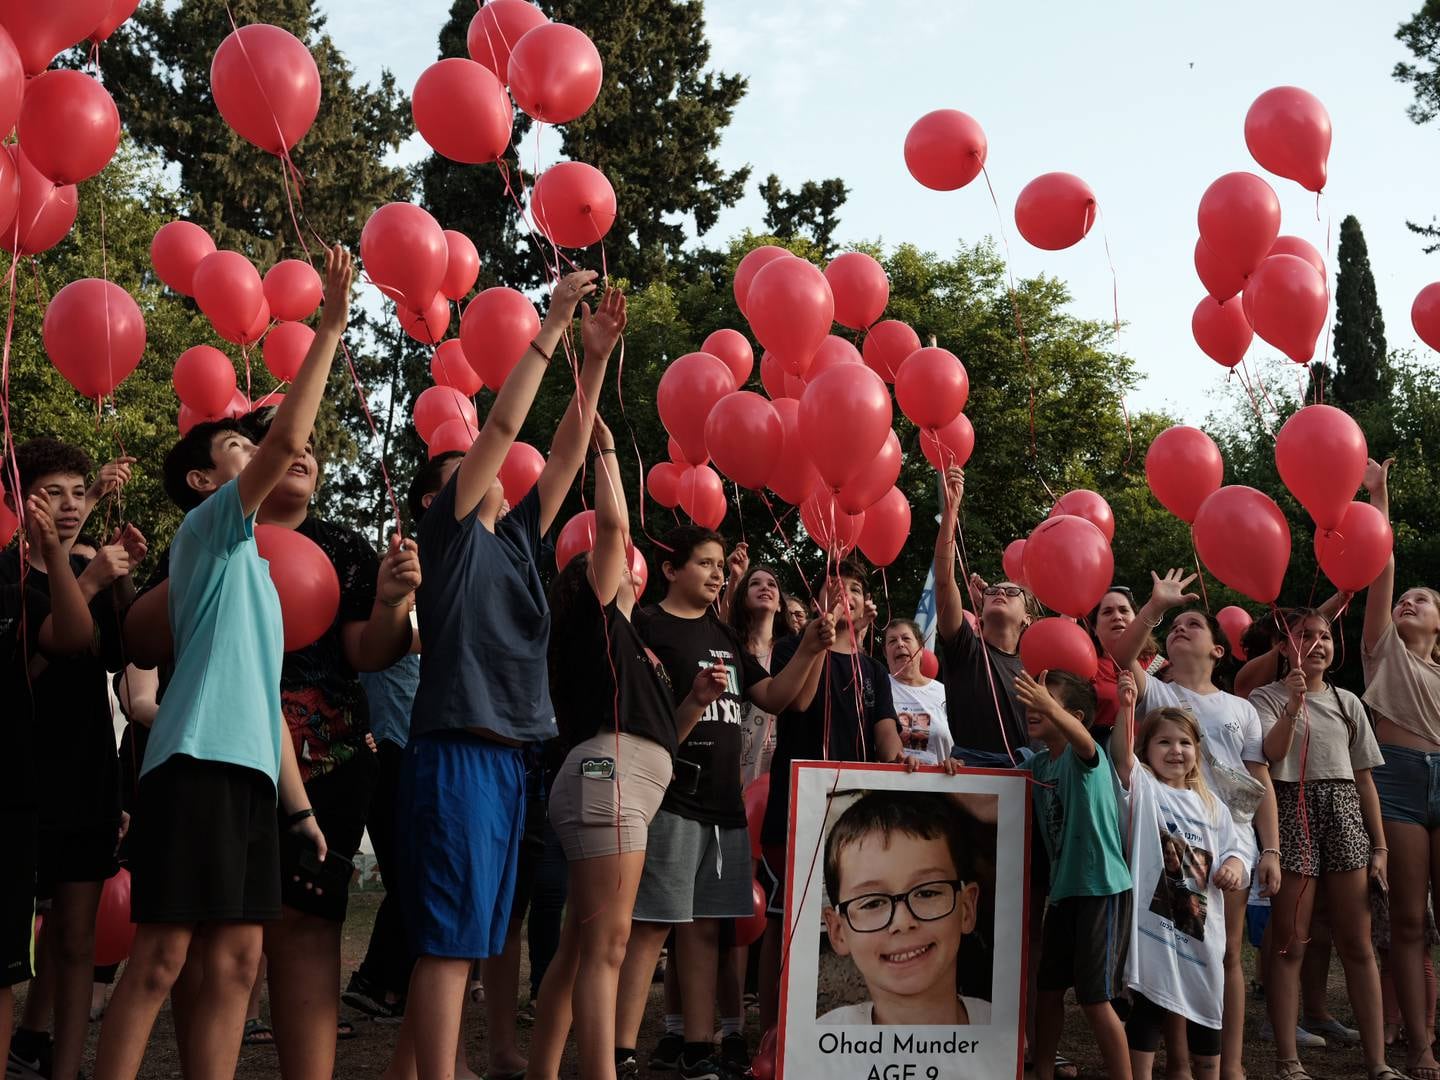 FEIRING MED BISMAK: Ohad fylte ni år mens han satt i fangenskap på Gaza. Familien Munder arrangerte et bursdagsselskap til ære for ham, hvor de slapp løp flere titalls røde ballonger i været.